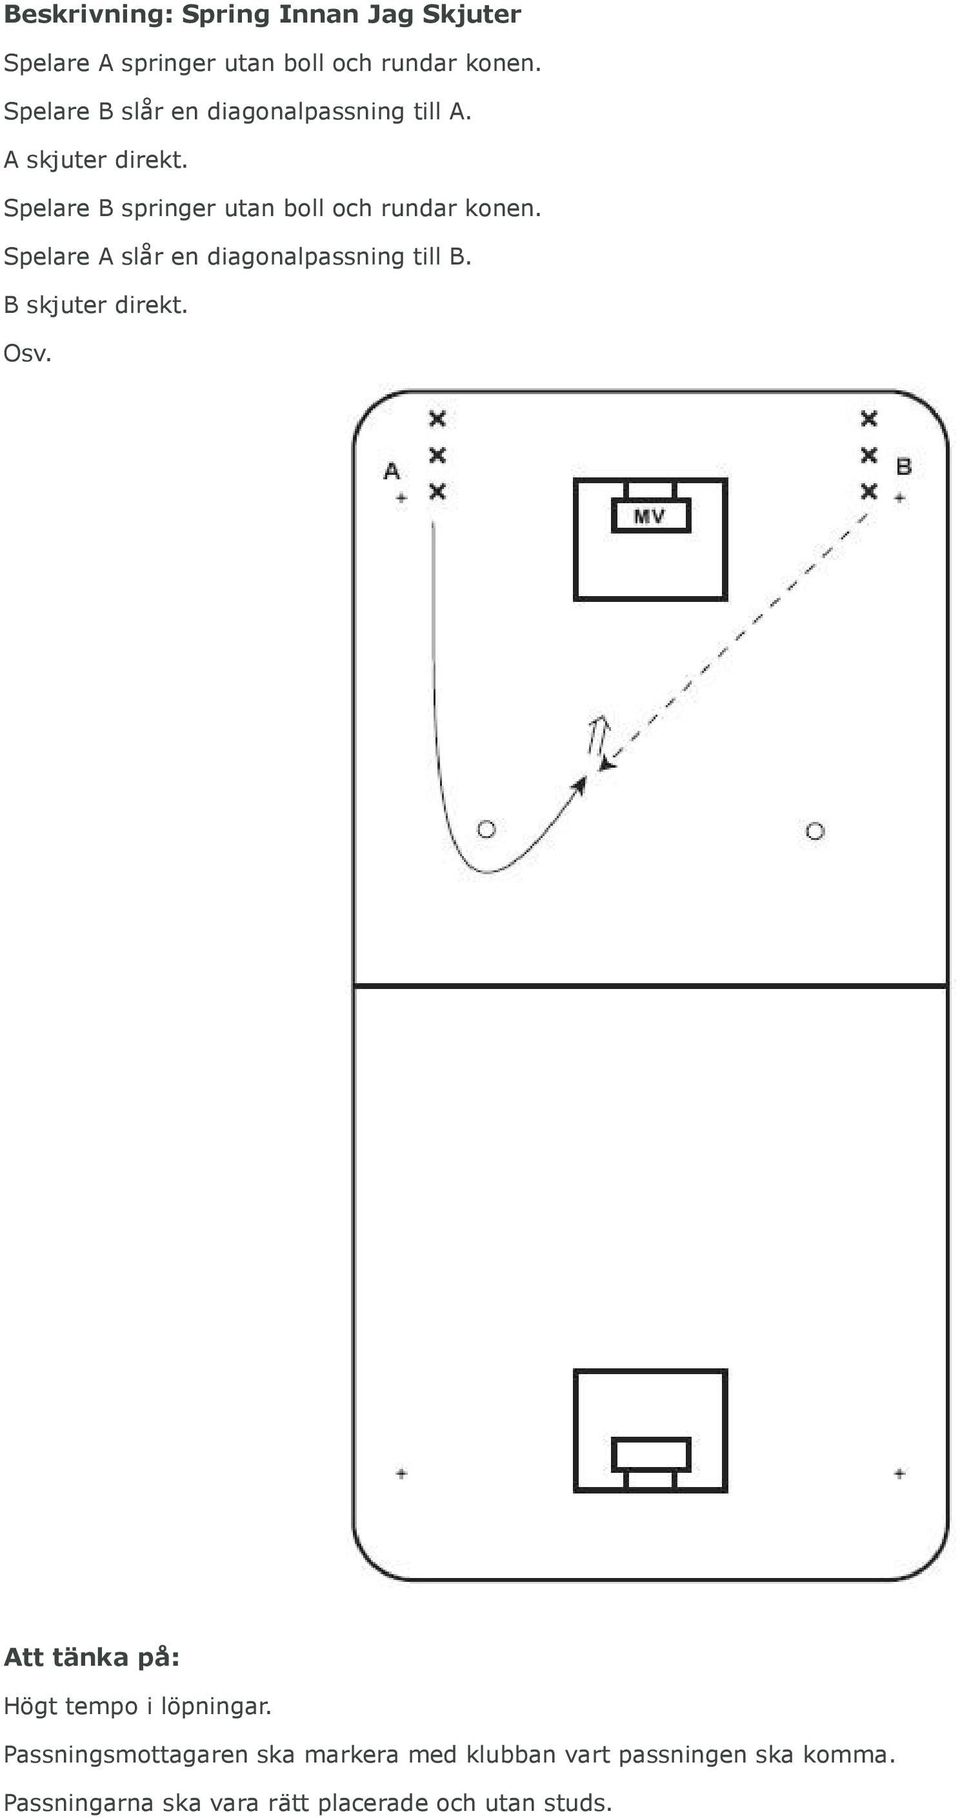 Spelare B springer utan boll och rundar konen. Spelare A slår en diagonalpassning till B.